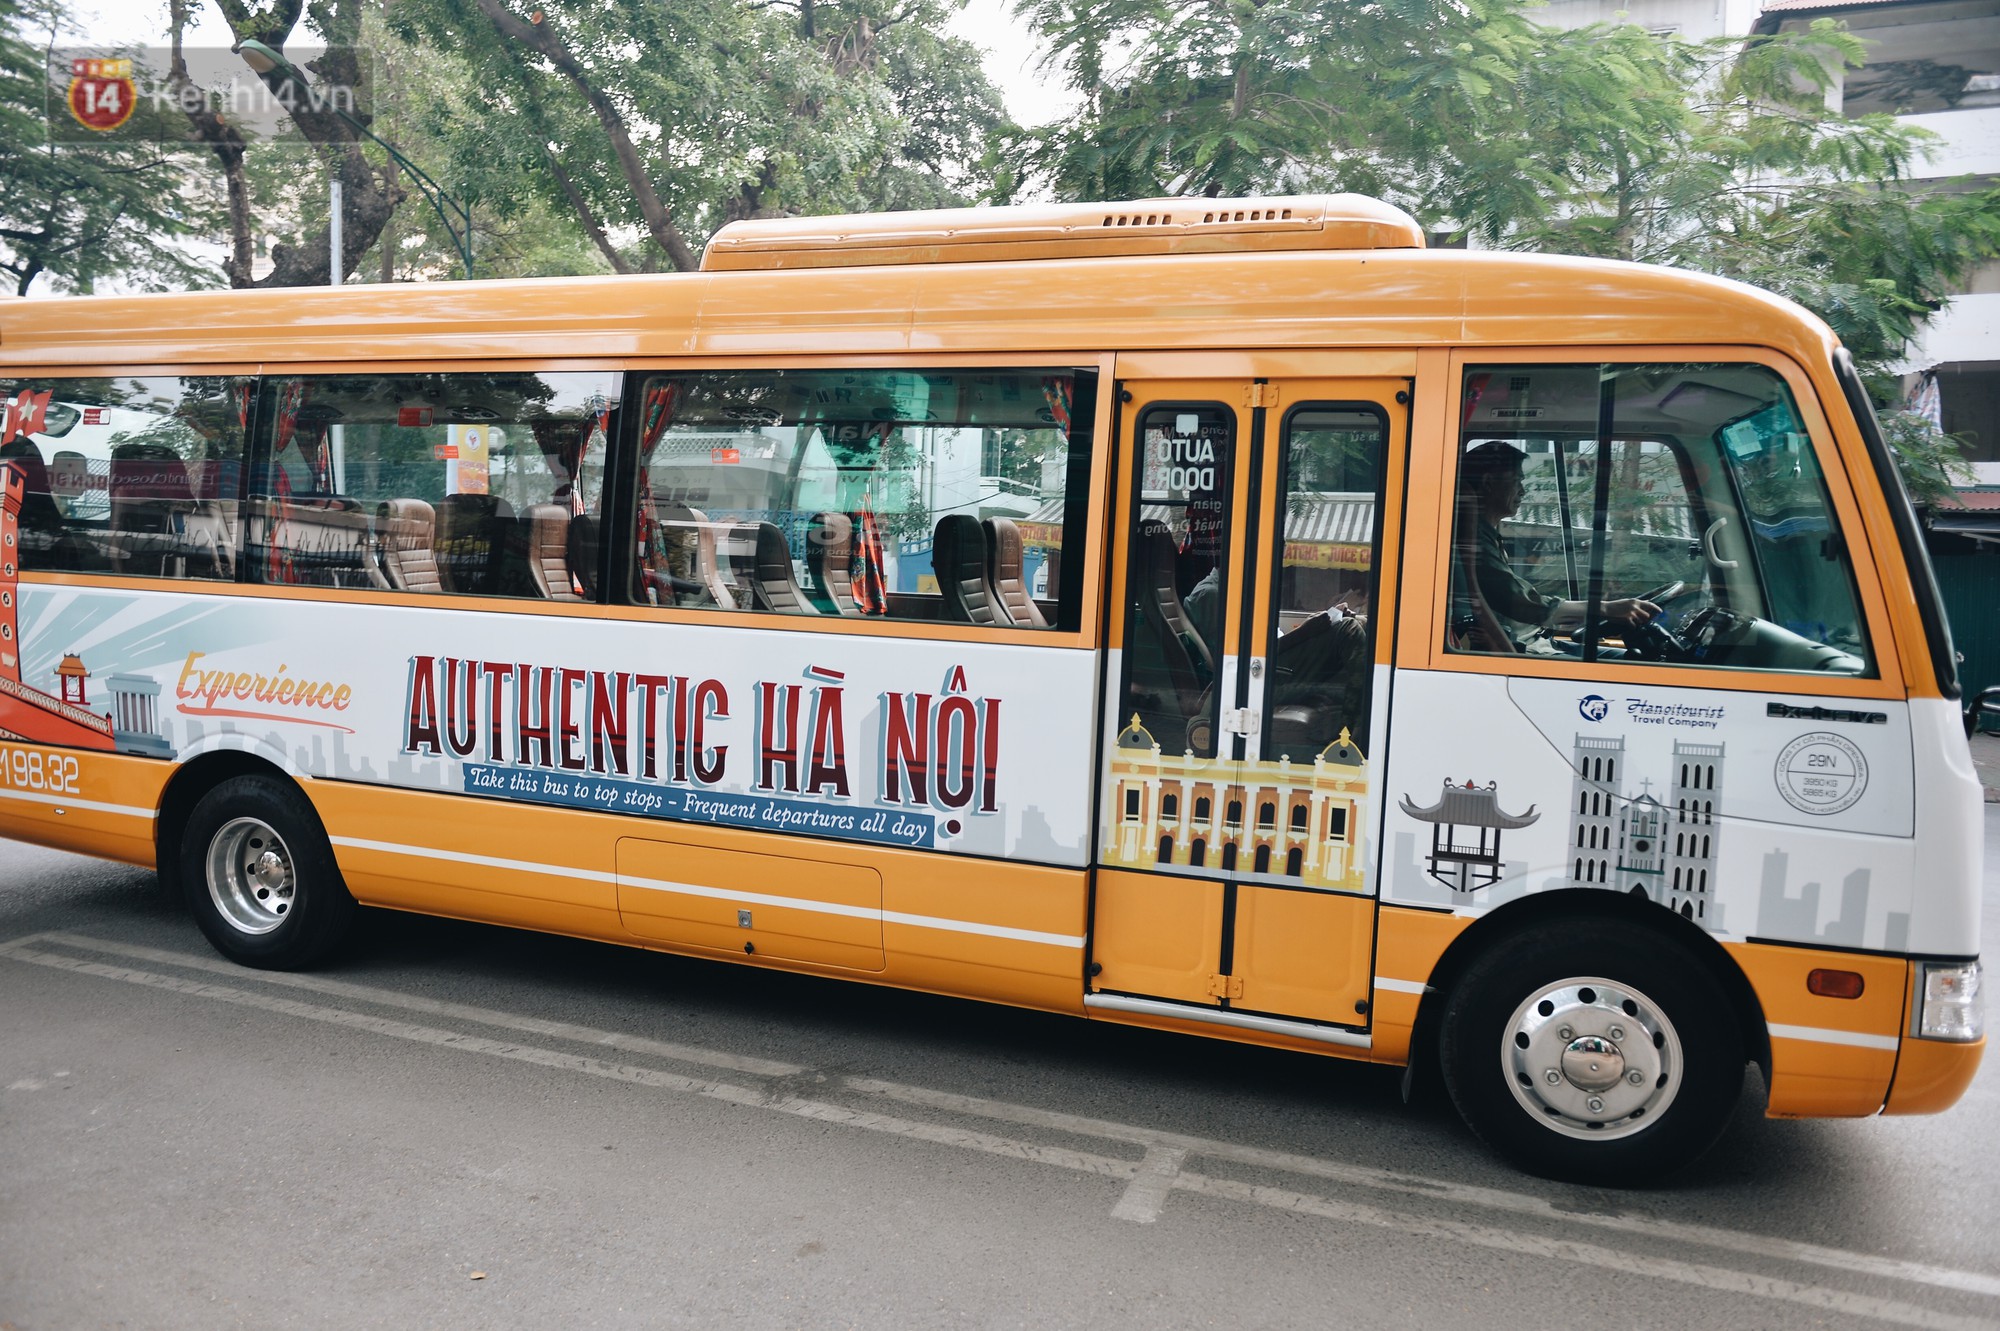 Du lịch Hà Nội bằng xe điện Trải nghiệm thủ đô theo phong cách độc đáo